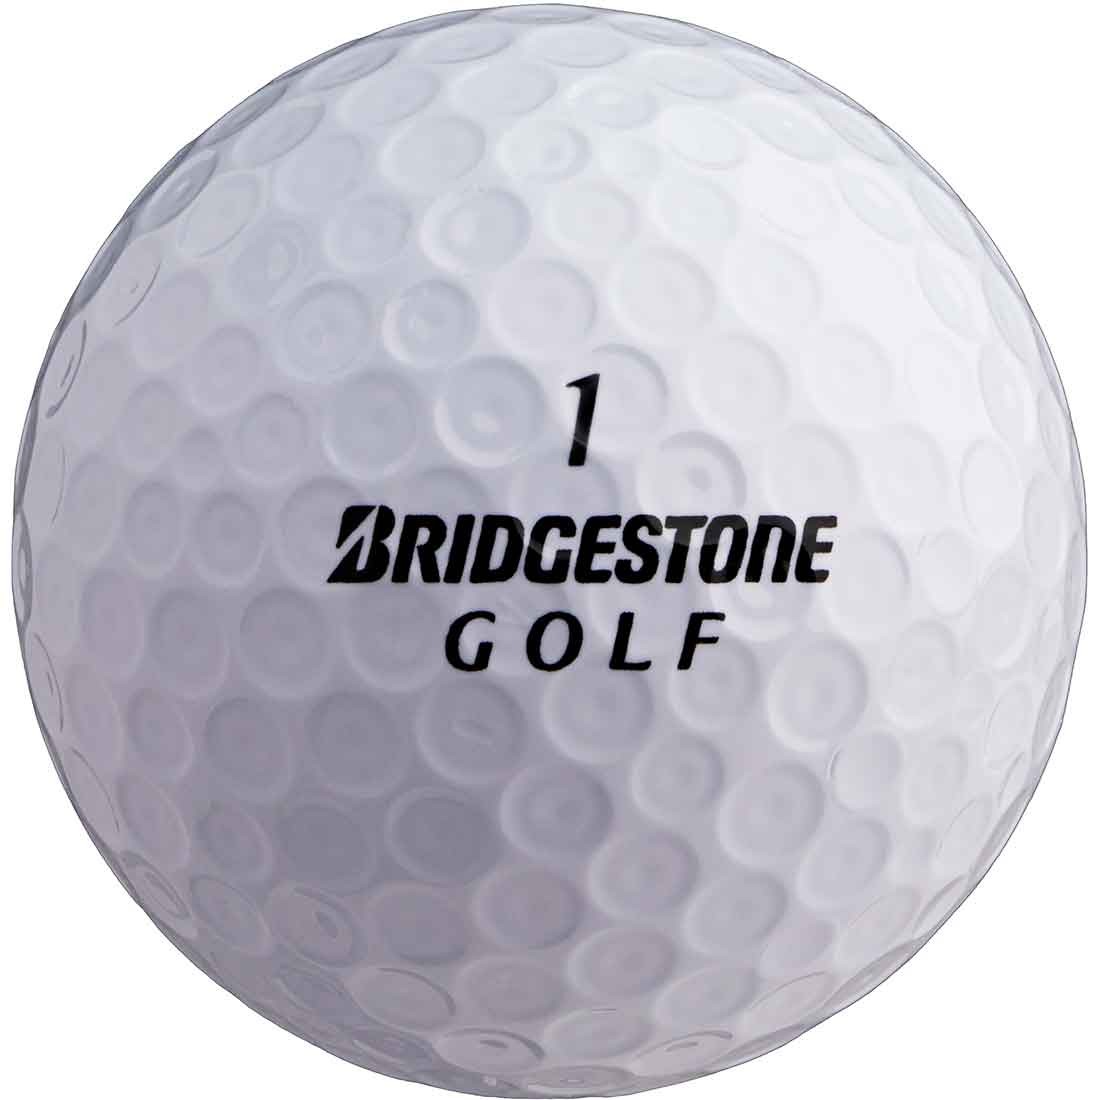 Which One Is Best Golf Ball? Bridgestone Golf Balls Review 2018